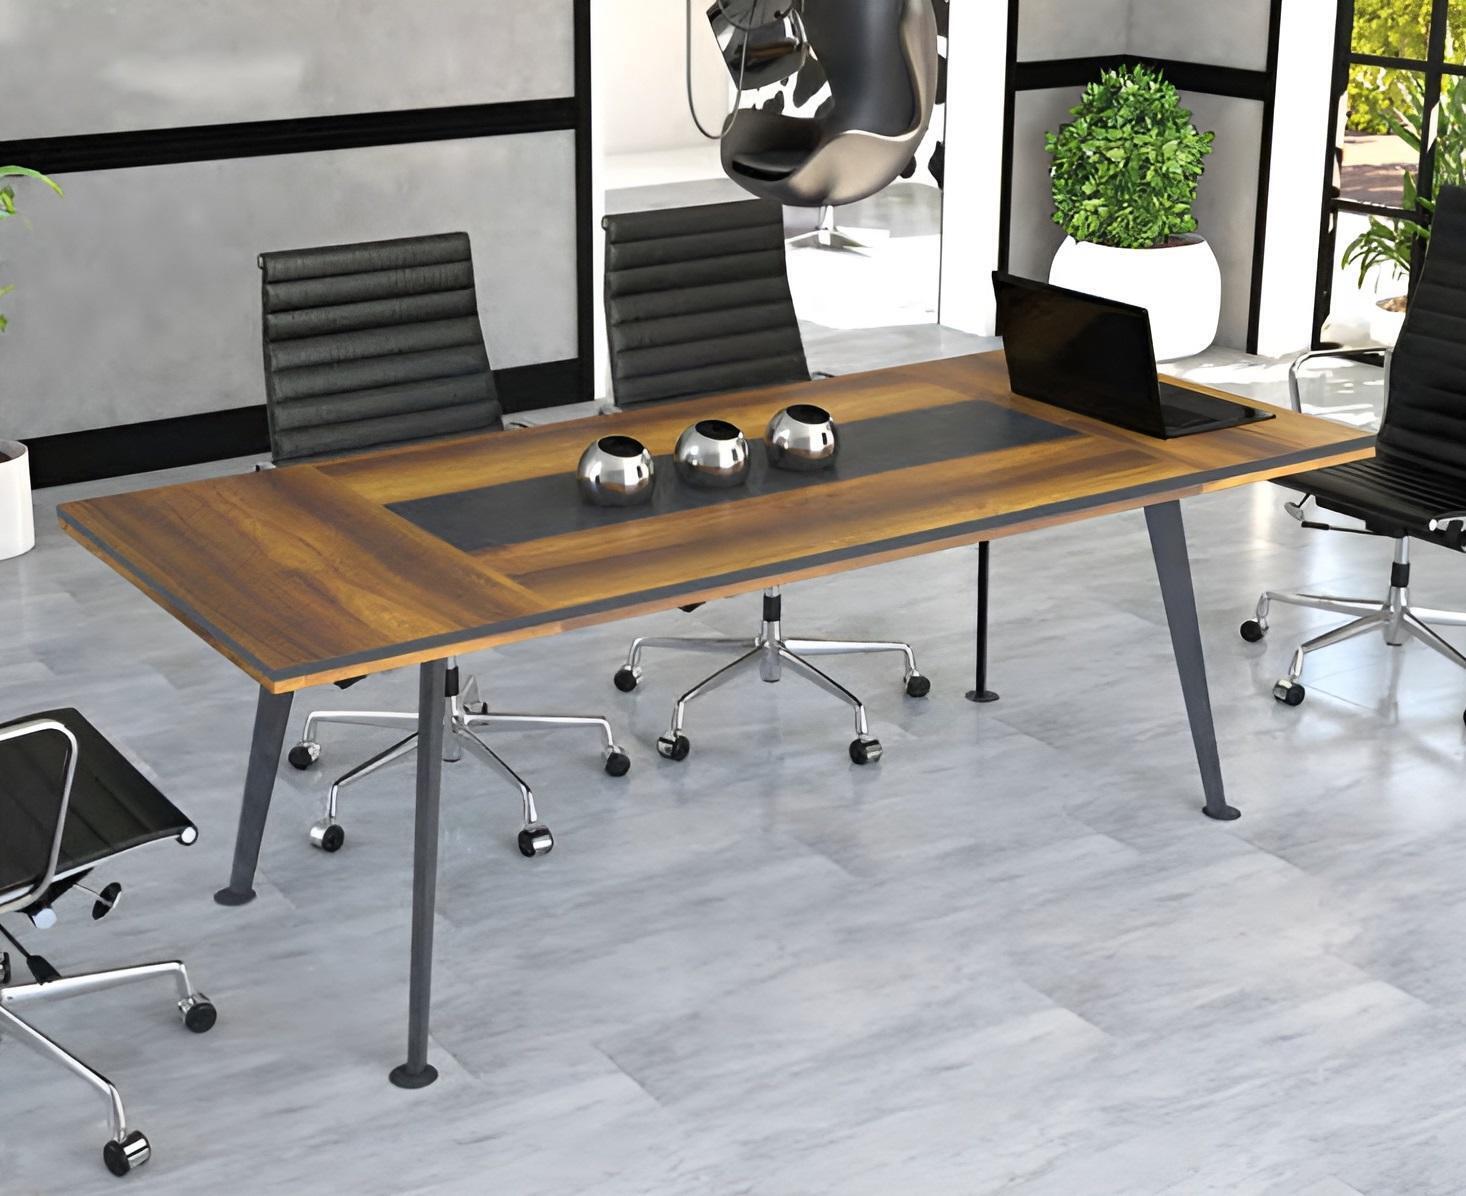 Konferenzmöbel Konferenztisch Besprechungstische Groß Tisch Braun Holz